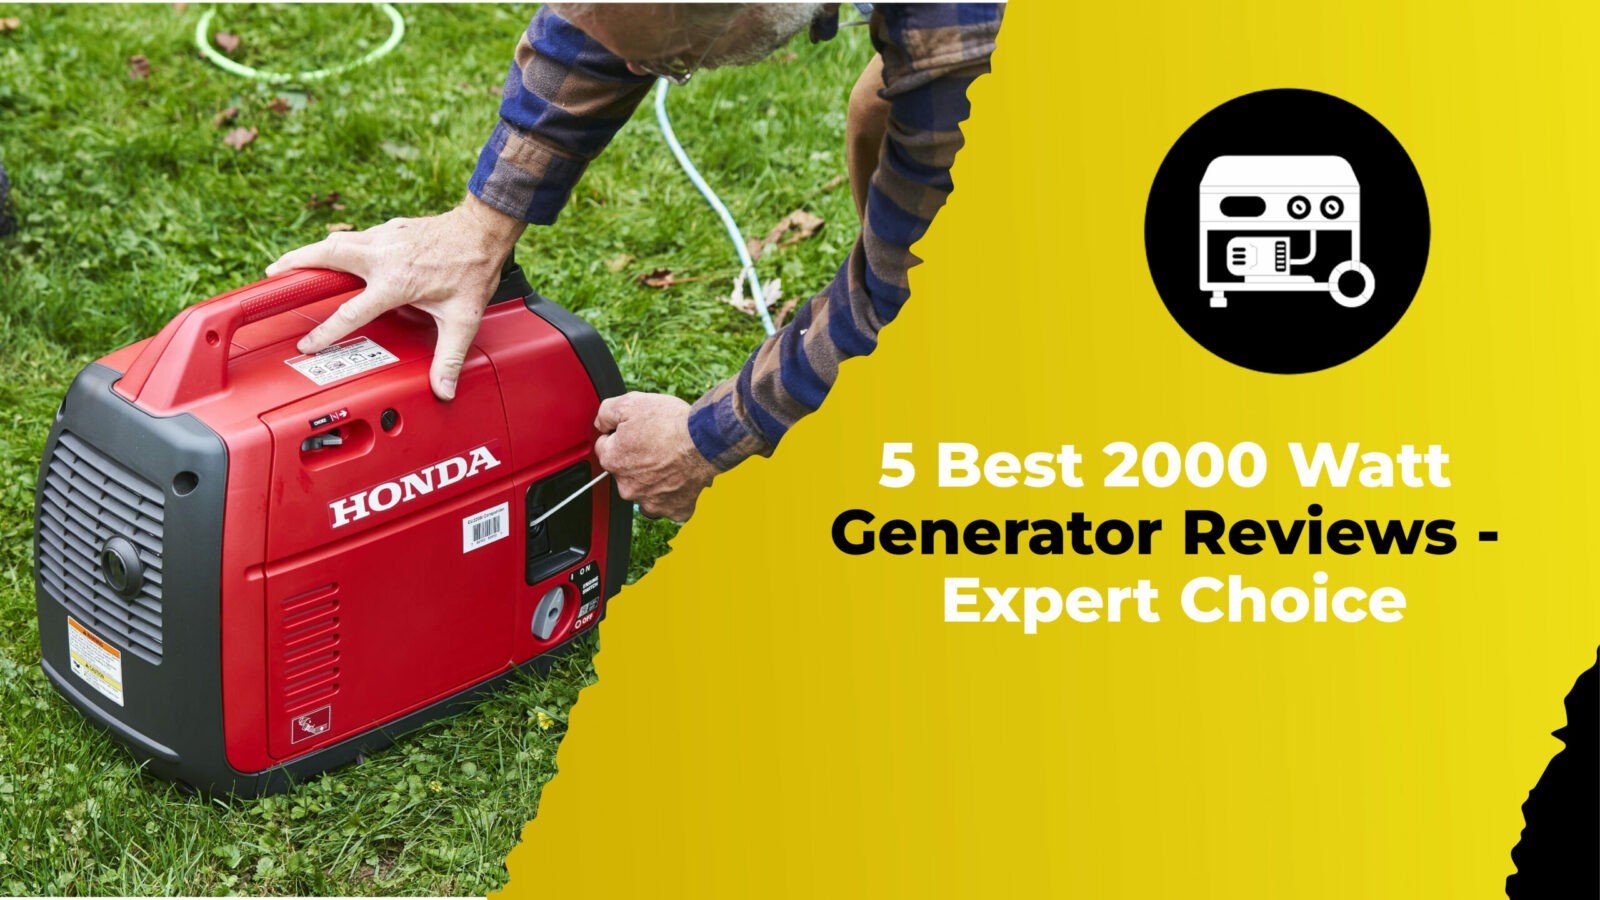 5 Best 2000 Watt Generator Reviews - Expert Choice